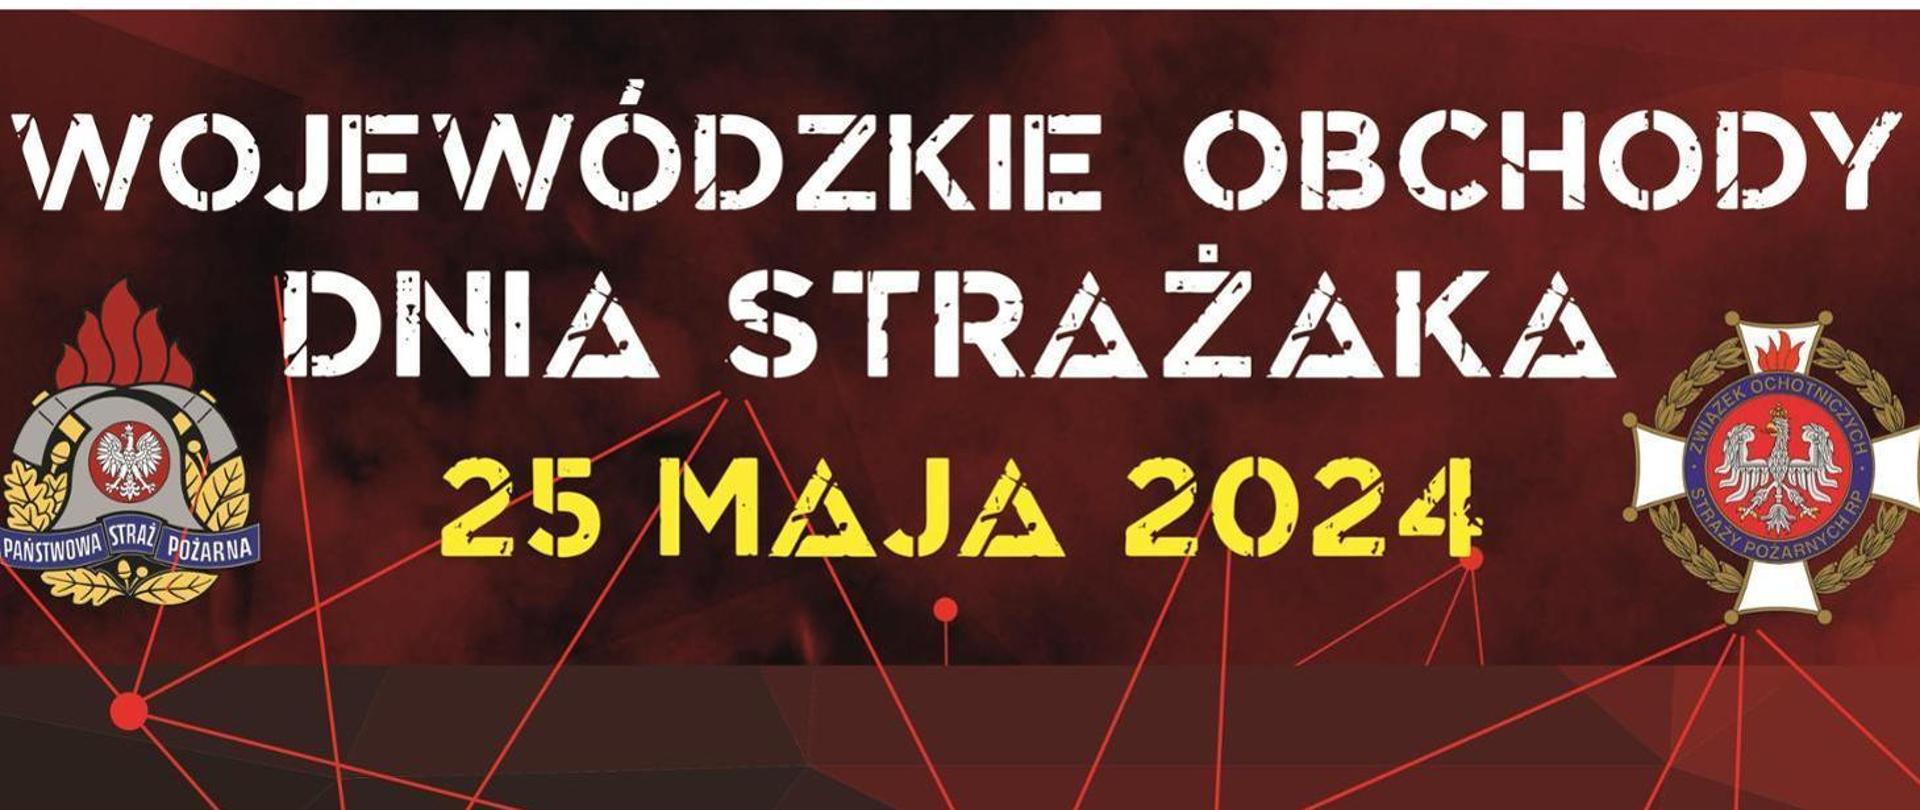 Wojewódzkie Obchody Dnia Strażaka 2024